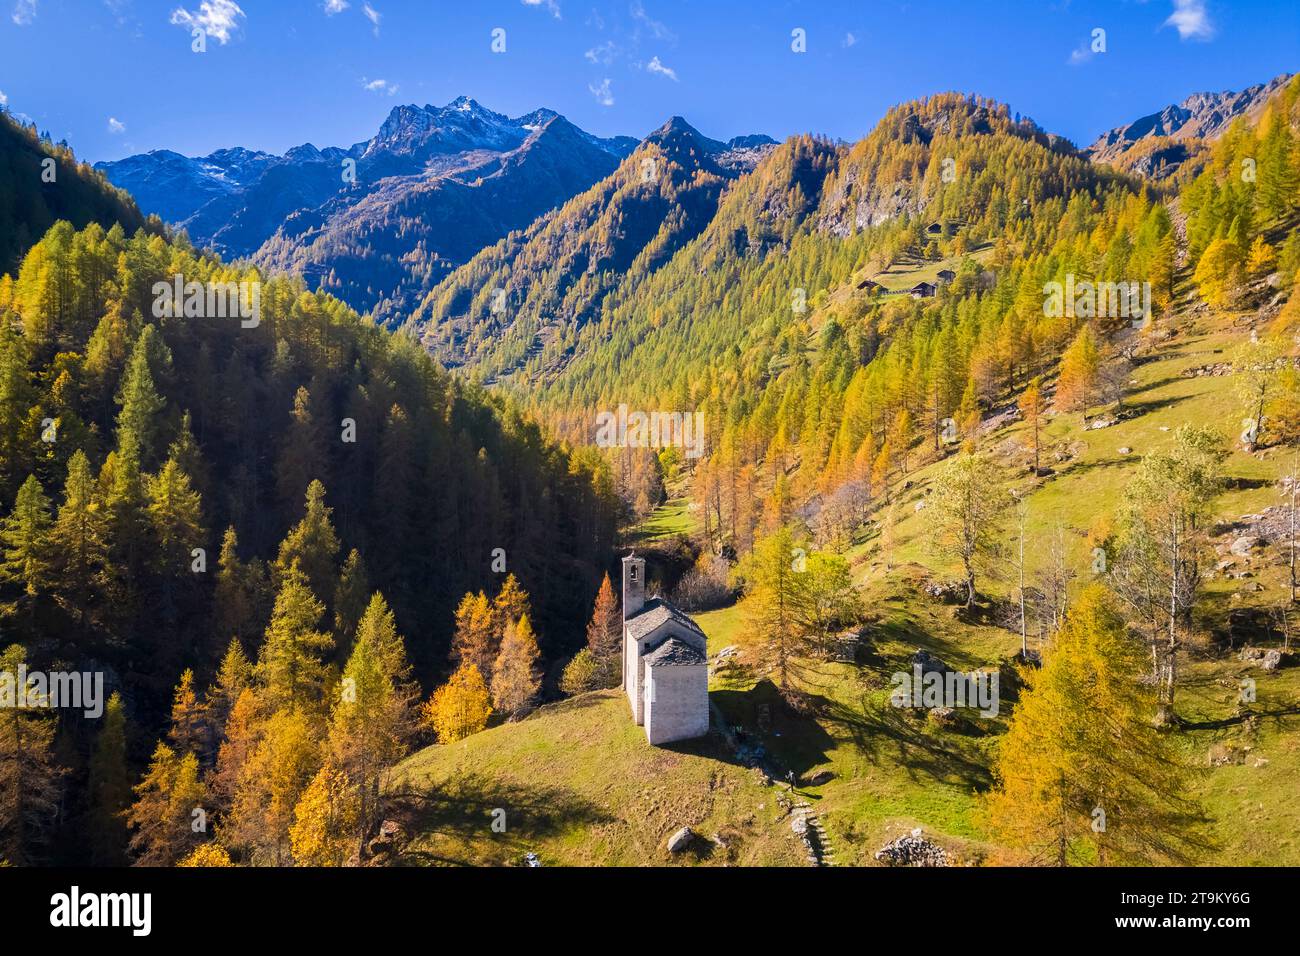 Veduta aerea della Peccia, piccolo villaggio walser in Val Vogna, Riva Valdobbia, Valsesia, provincia di Vercelli, Piemonte, Italia, Europa. Foto Stock